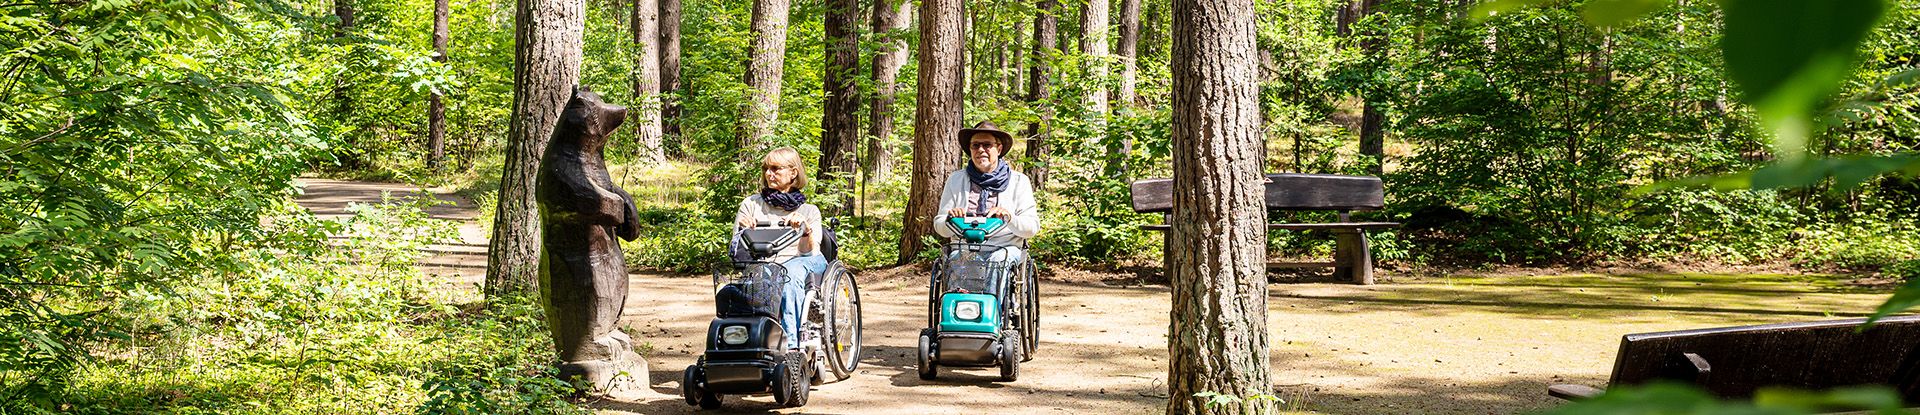 Zwei Urlaubsgäste im Rollstuhl auf dem Rollstuhl-Wanderweg